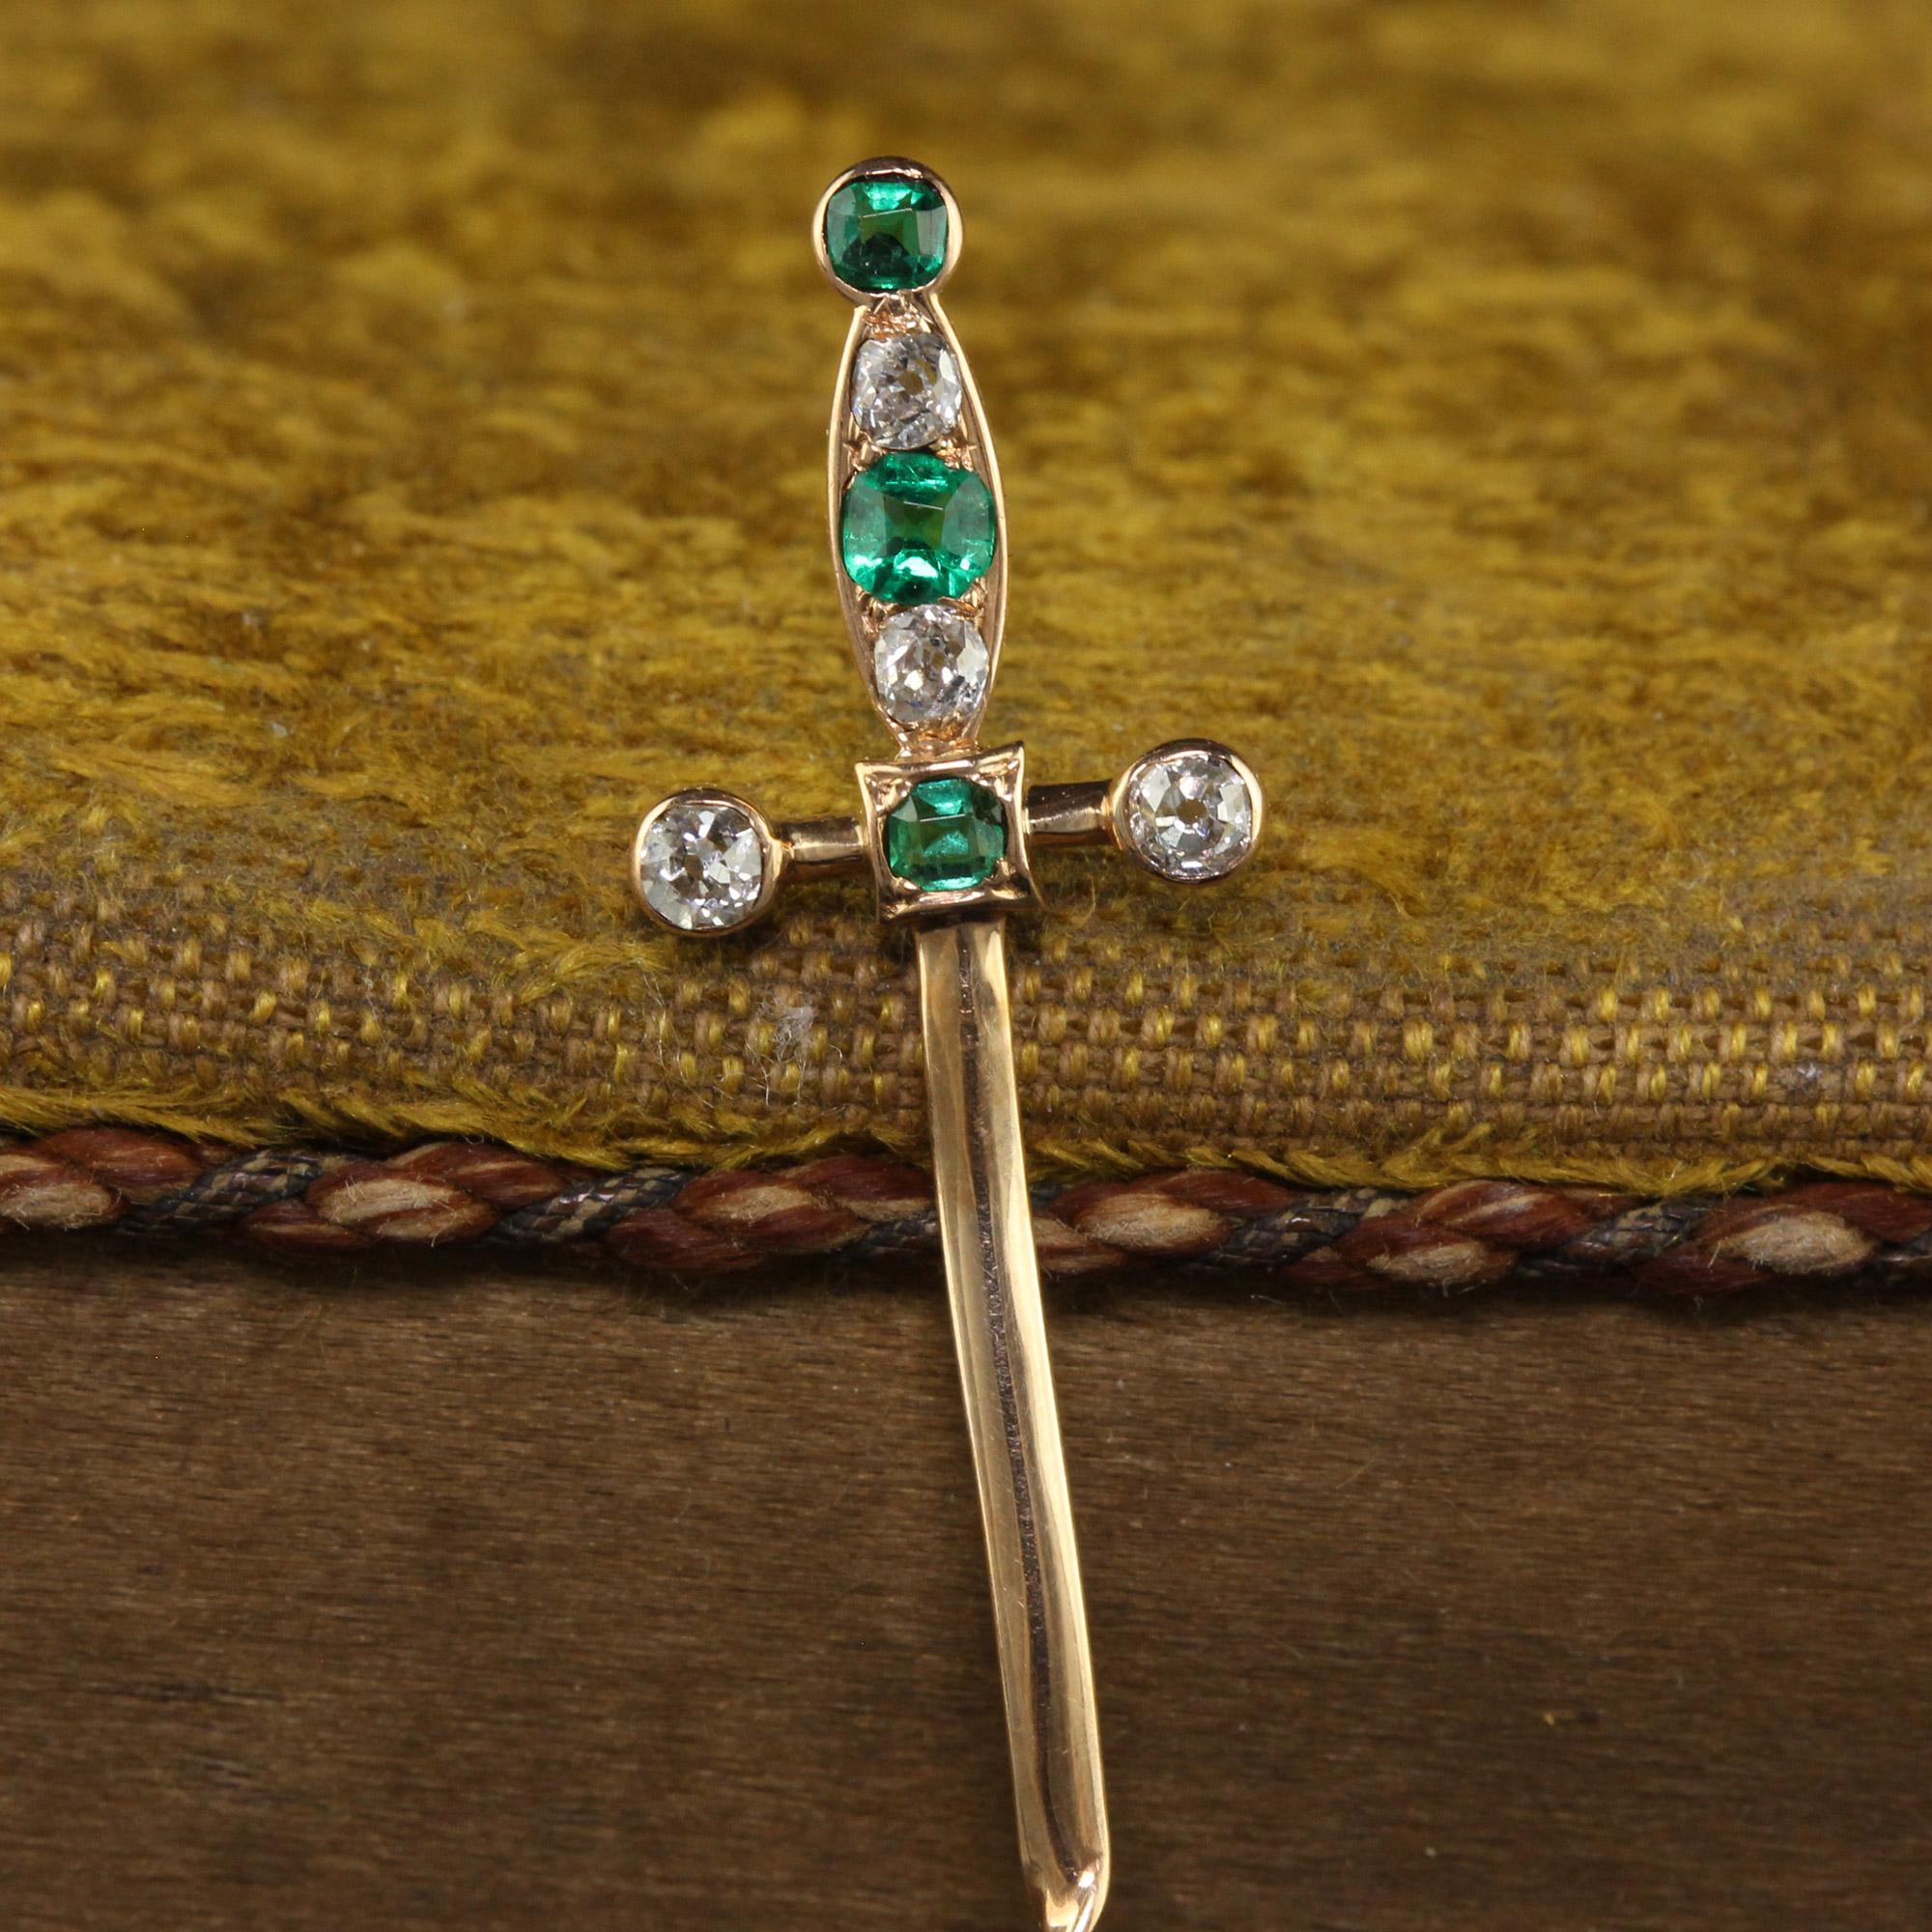 Schöne antike viktorianische 18K Gelbgold Old Cut Smaragd und Diamant Sword Stick Pin. Diese wunderschöne viktorianische Brosche ist aus 18 Karat Gelbgold gefertigt. Dieses unglaubliche Bild zeigt ein Schwert, dessen Griff mit natürlichen Smaragden